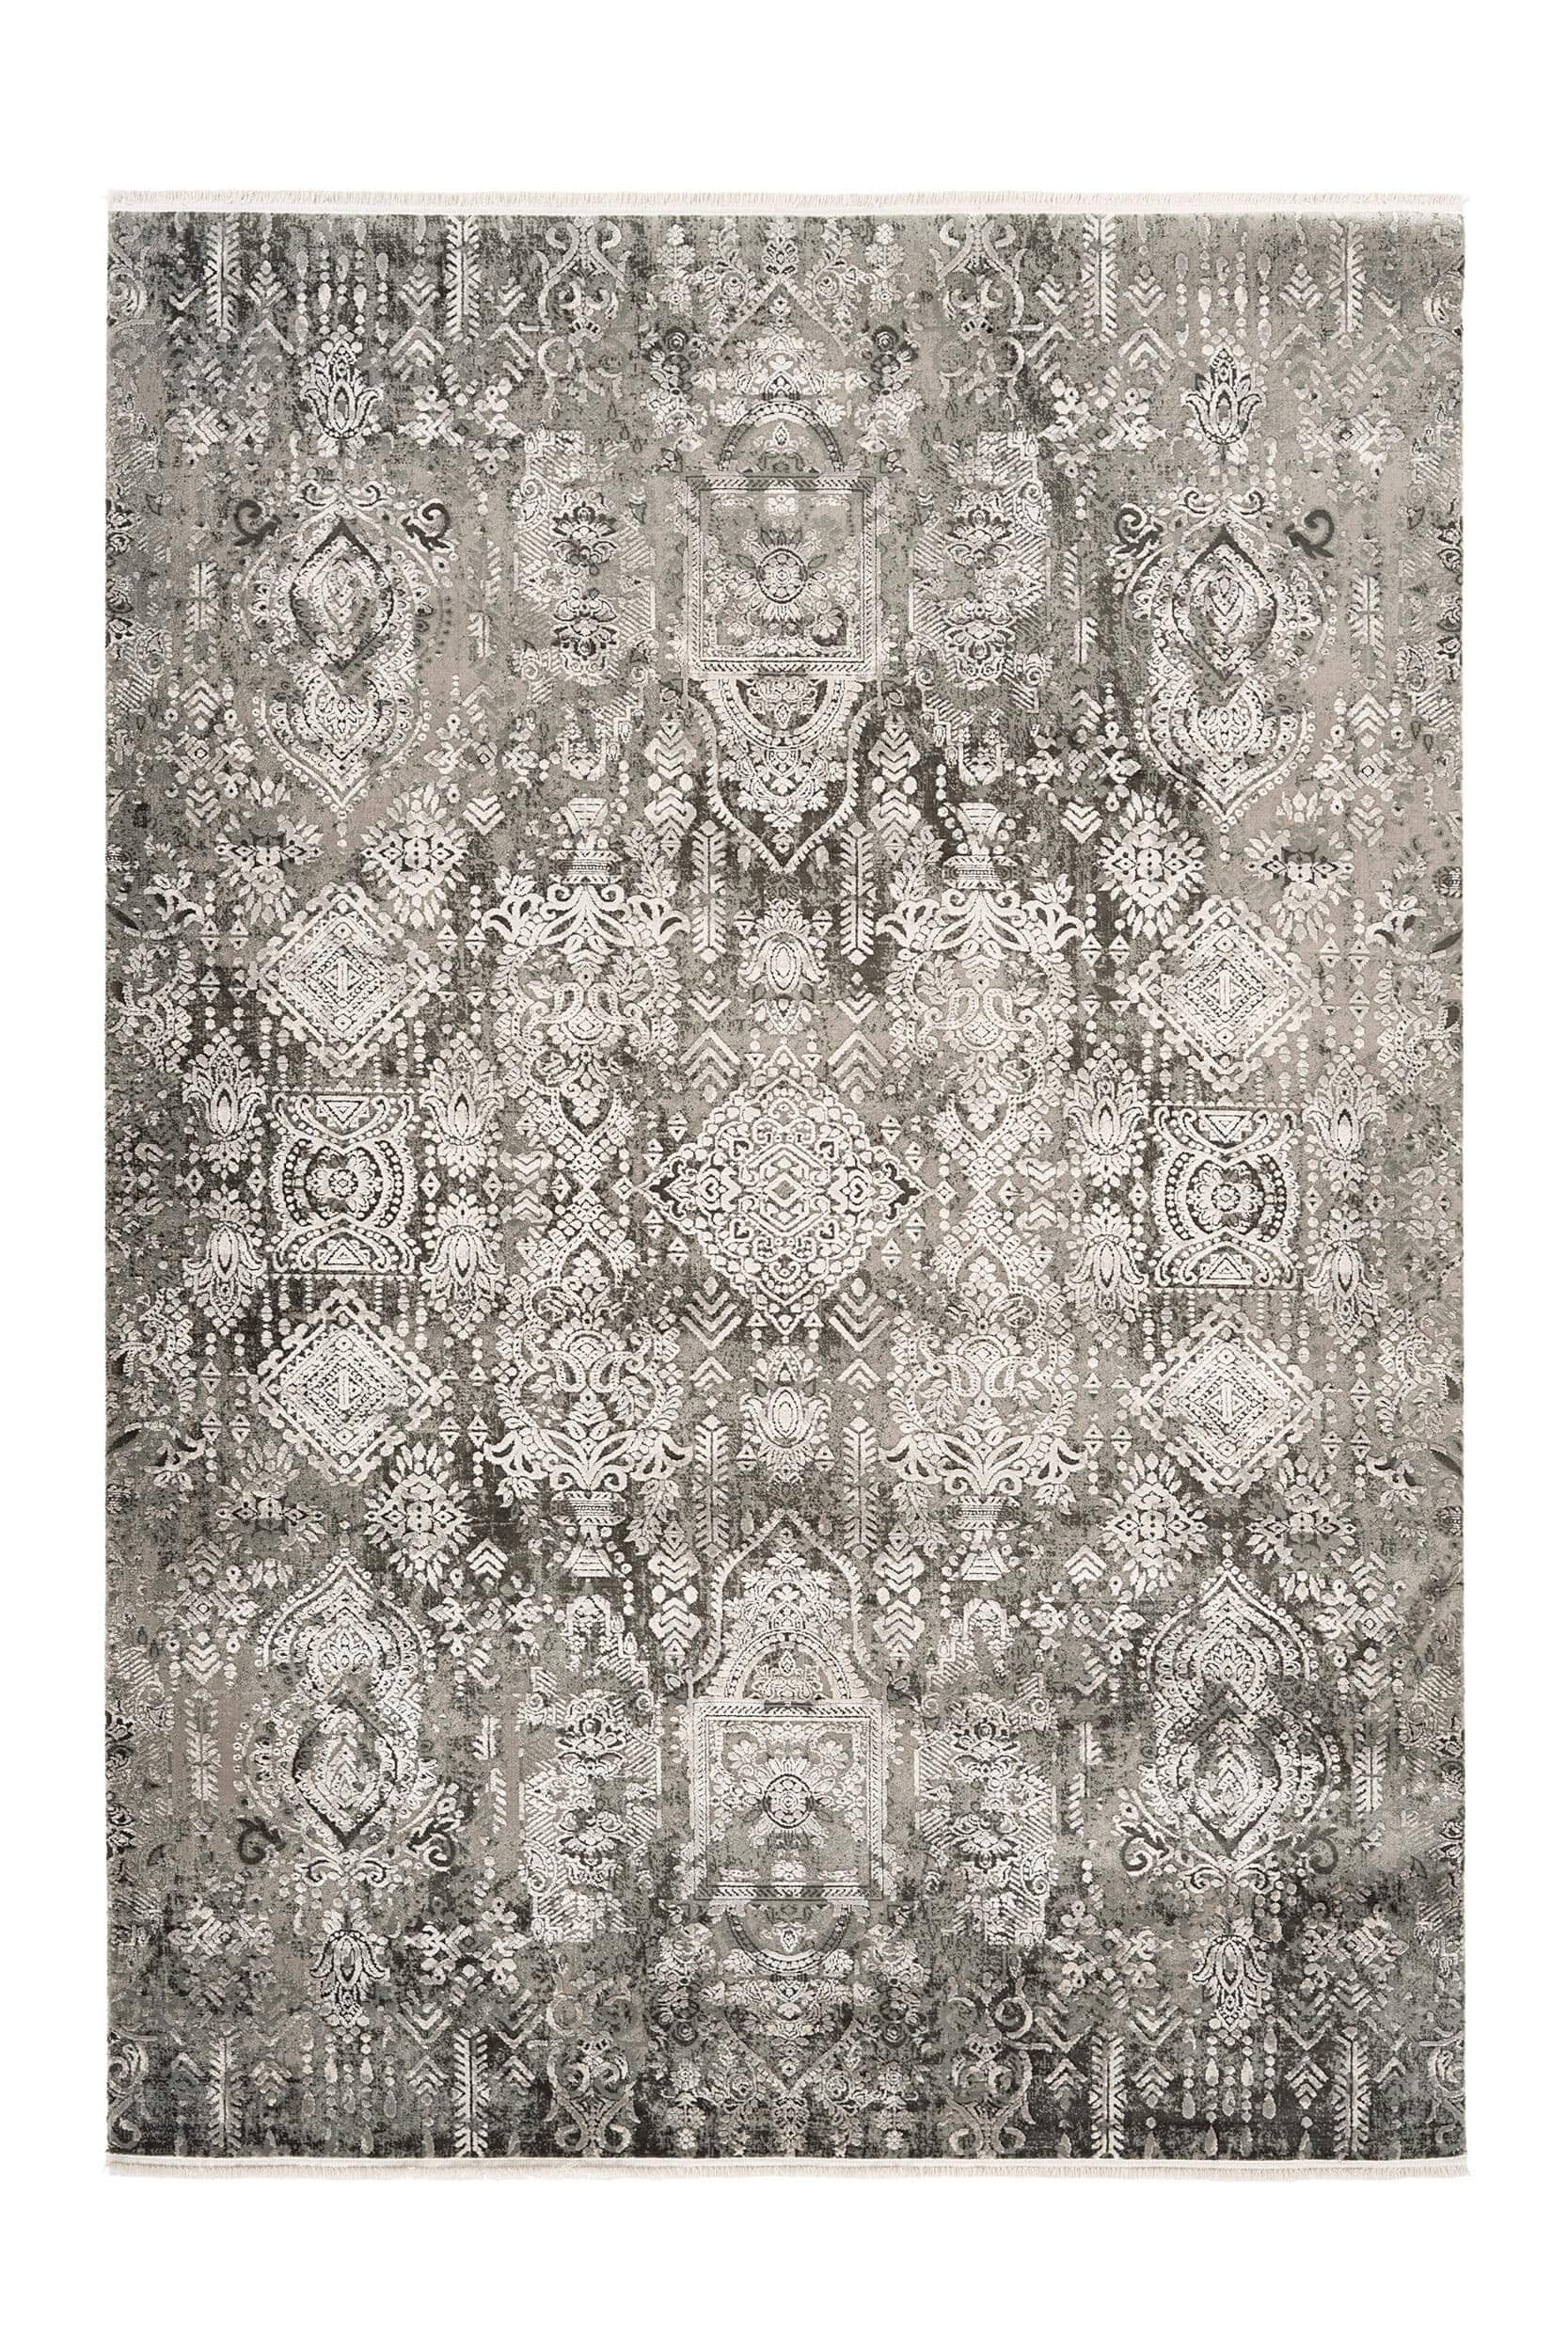 Teppich Orsay grau 120x170cm Pierre Card